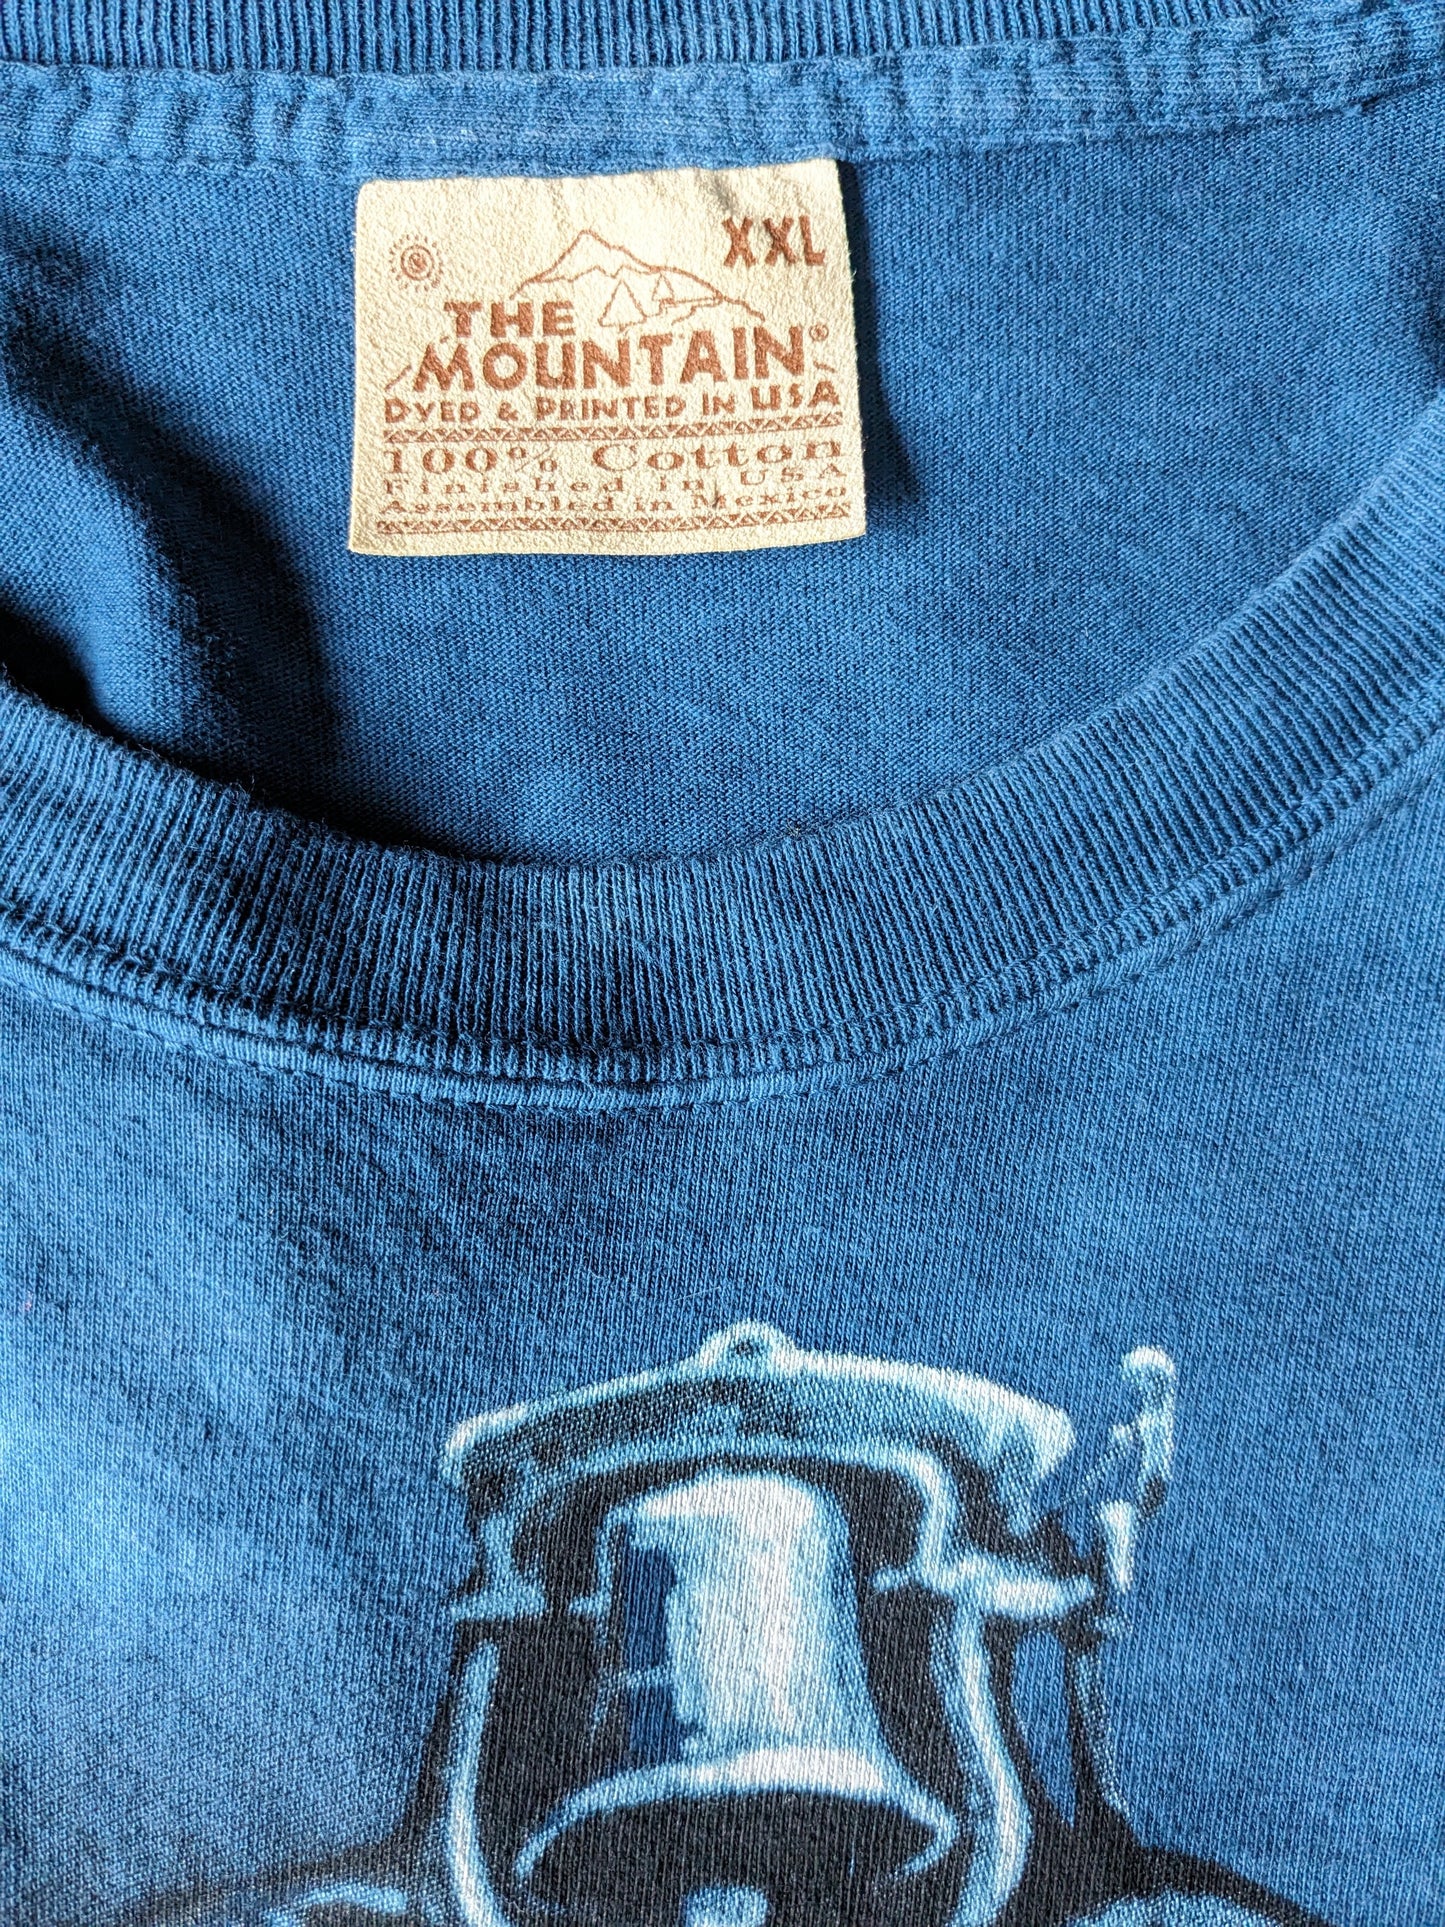 La camicia di montagna. Blu scuro con stampa locomotiva. Dimensione 2xl / xxl.